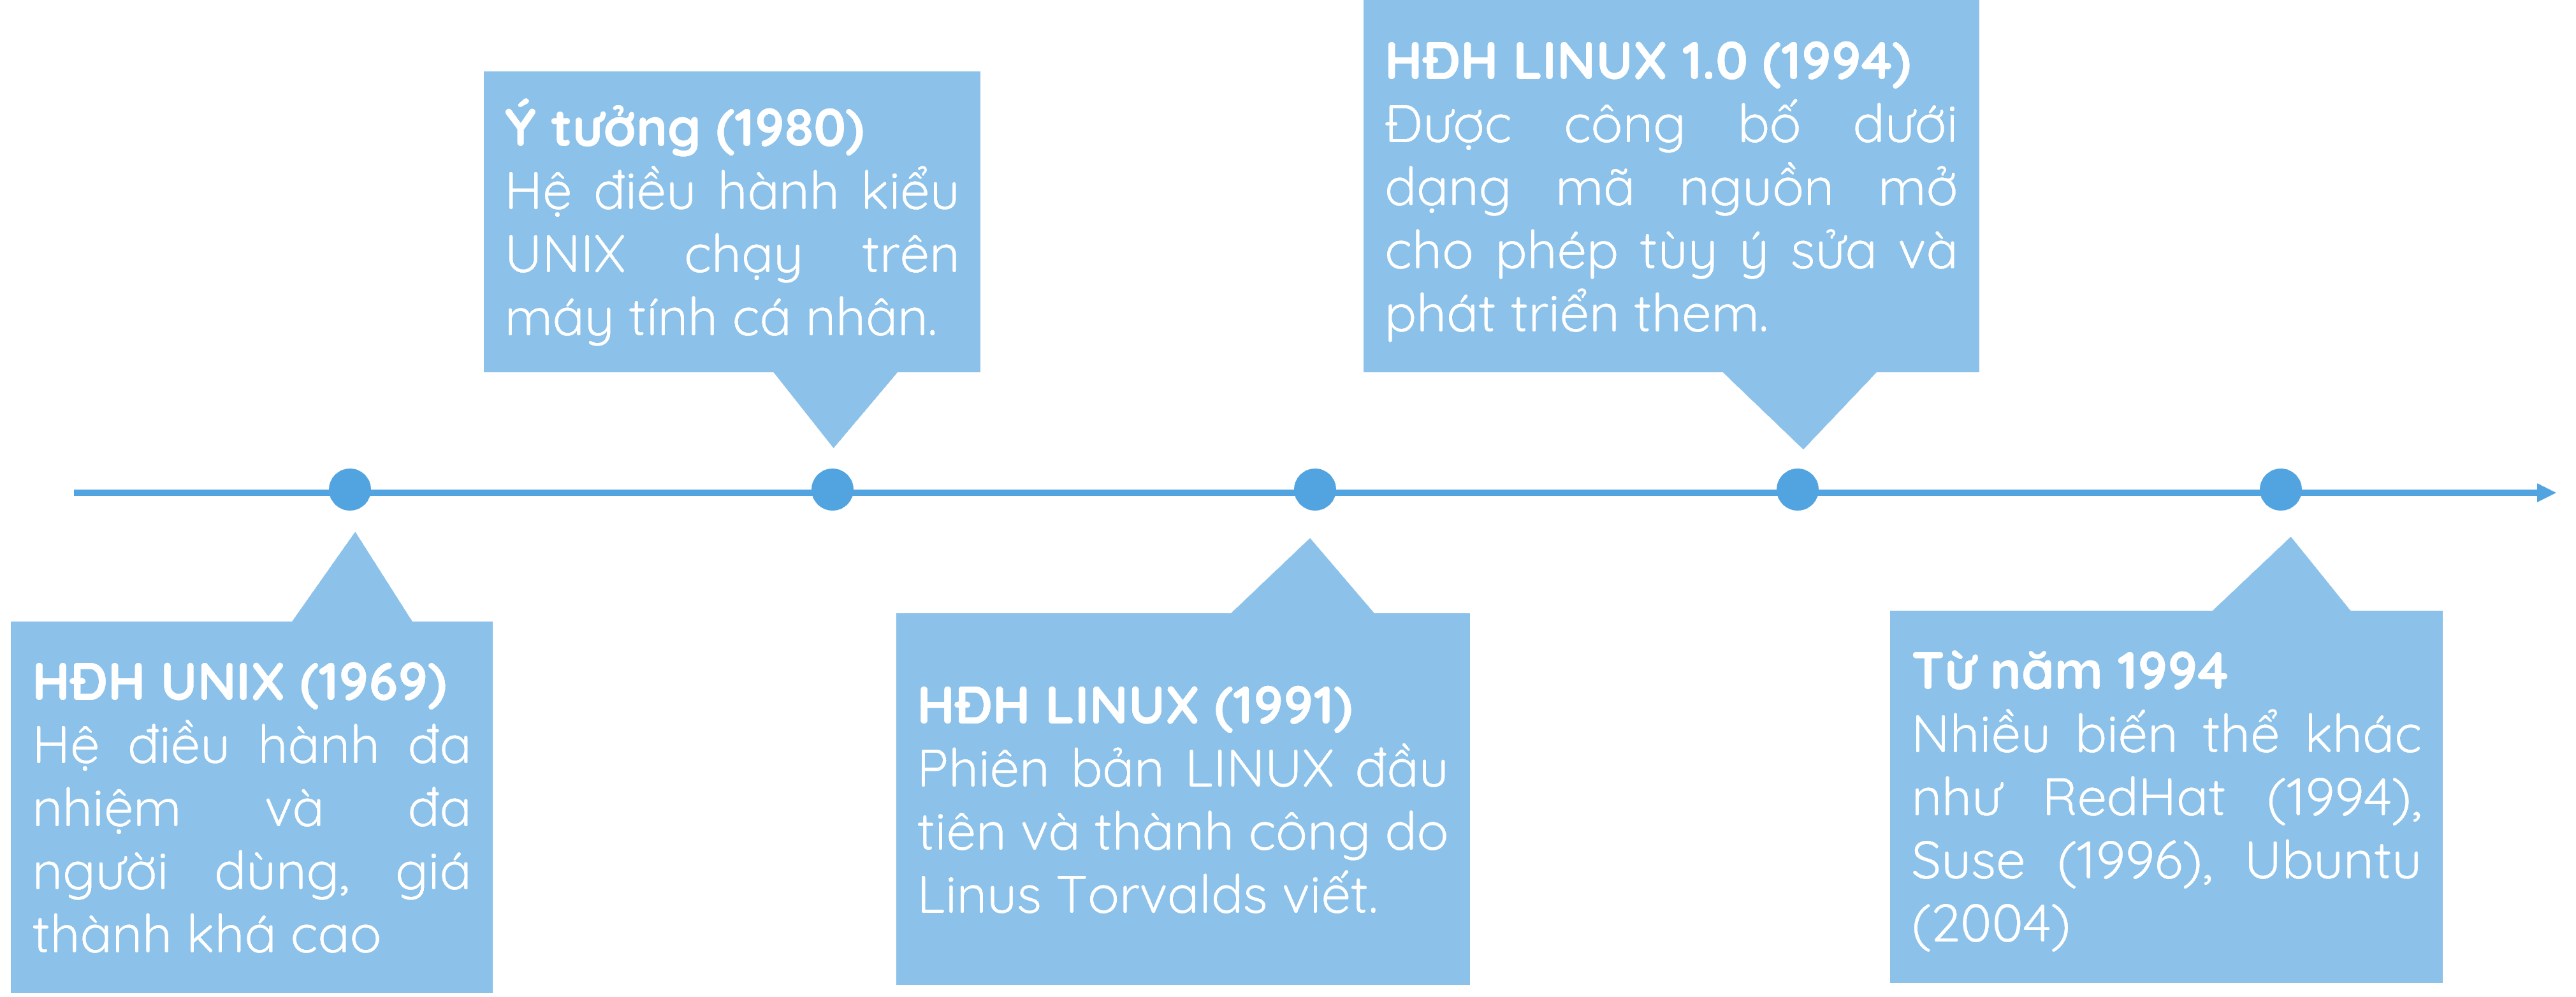 Các mốc thời gian của lịch sử hệ điều hành Linux.